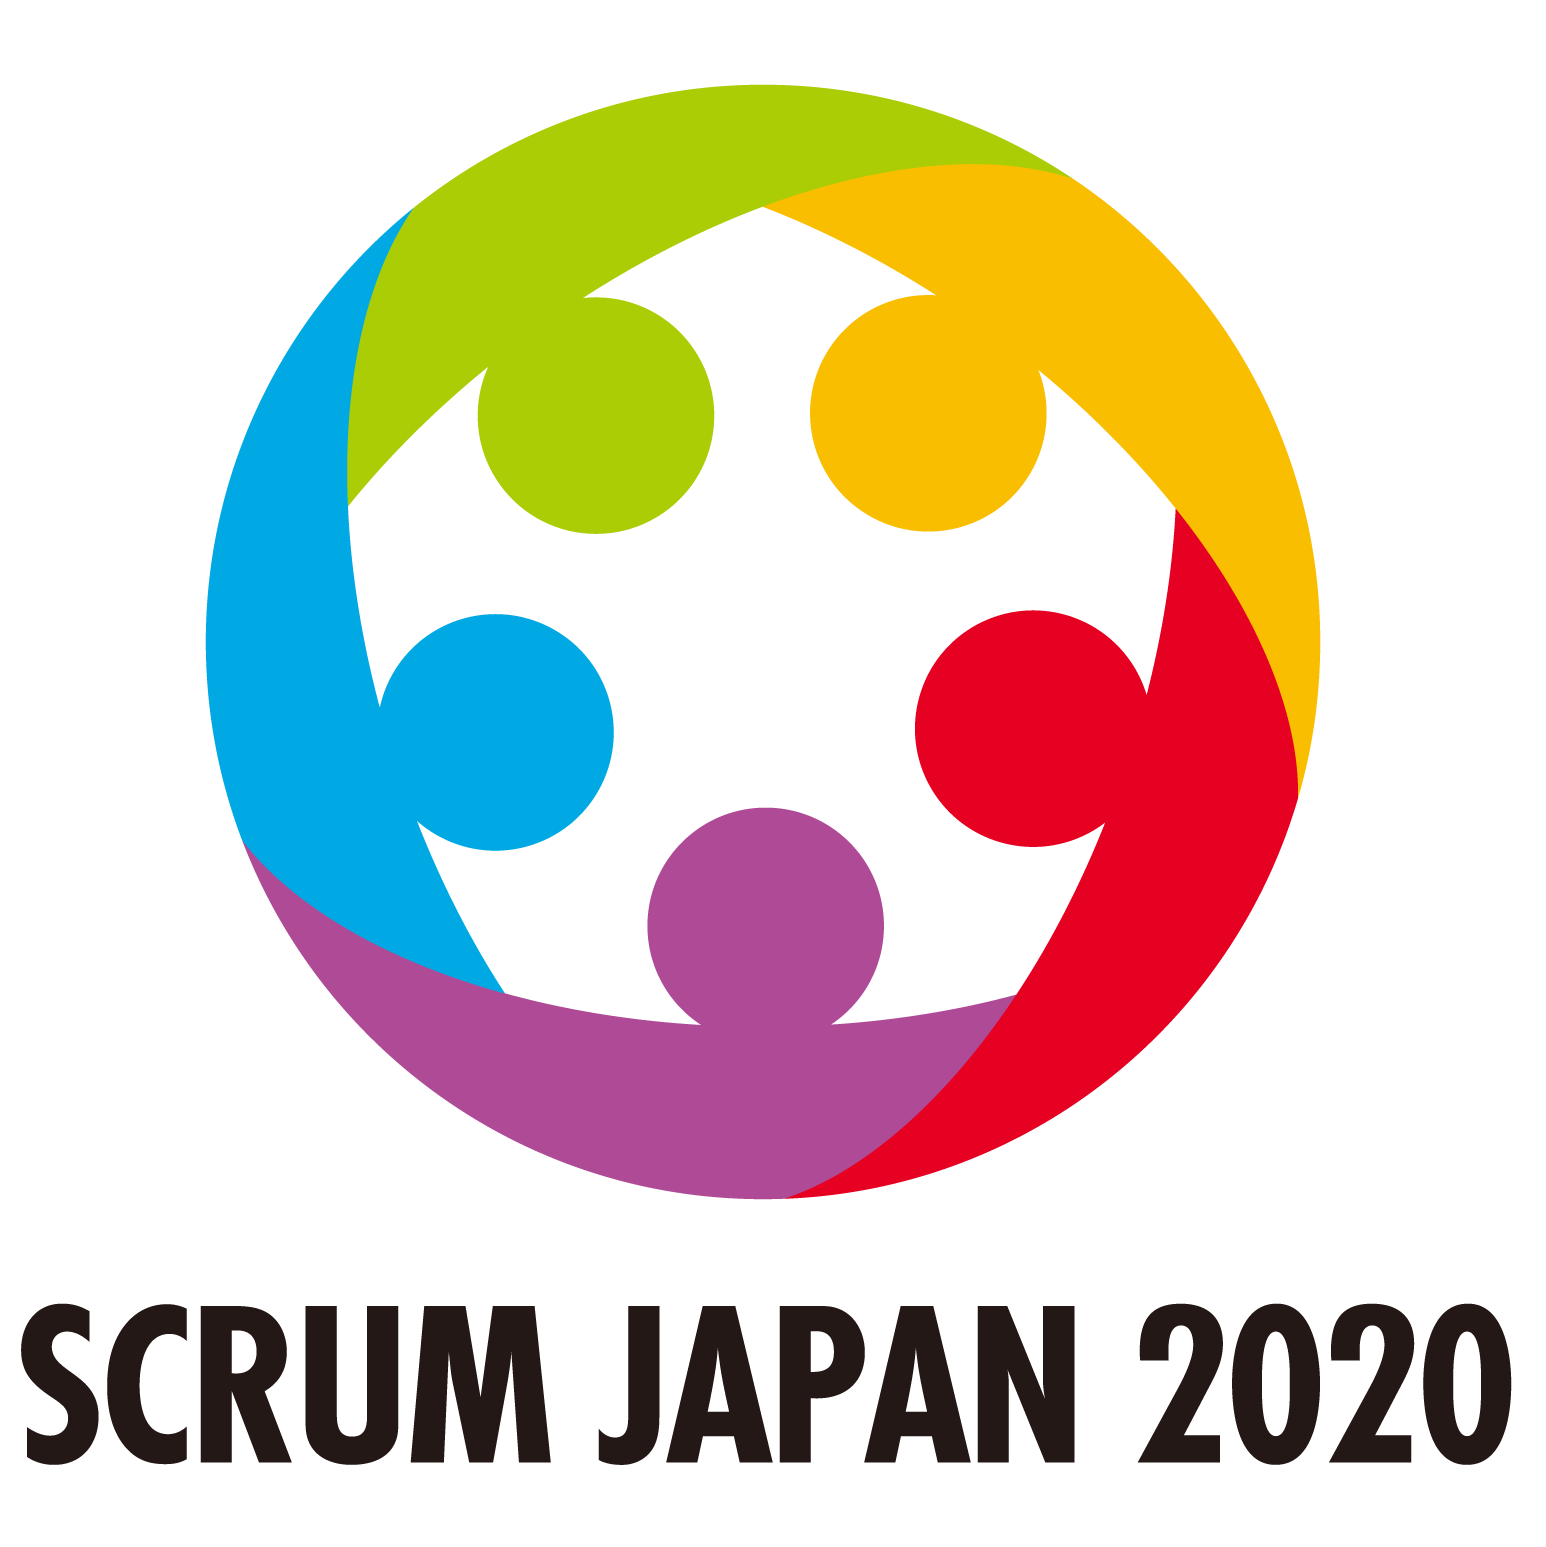 中小企業同士が支援し合い 経済危機を乗り越える Scrum Japan プロジェクトが全国にて展開 アチーブメント株式会社のプレスリリース